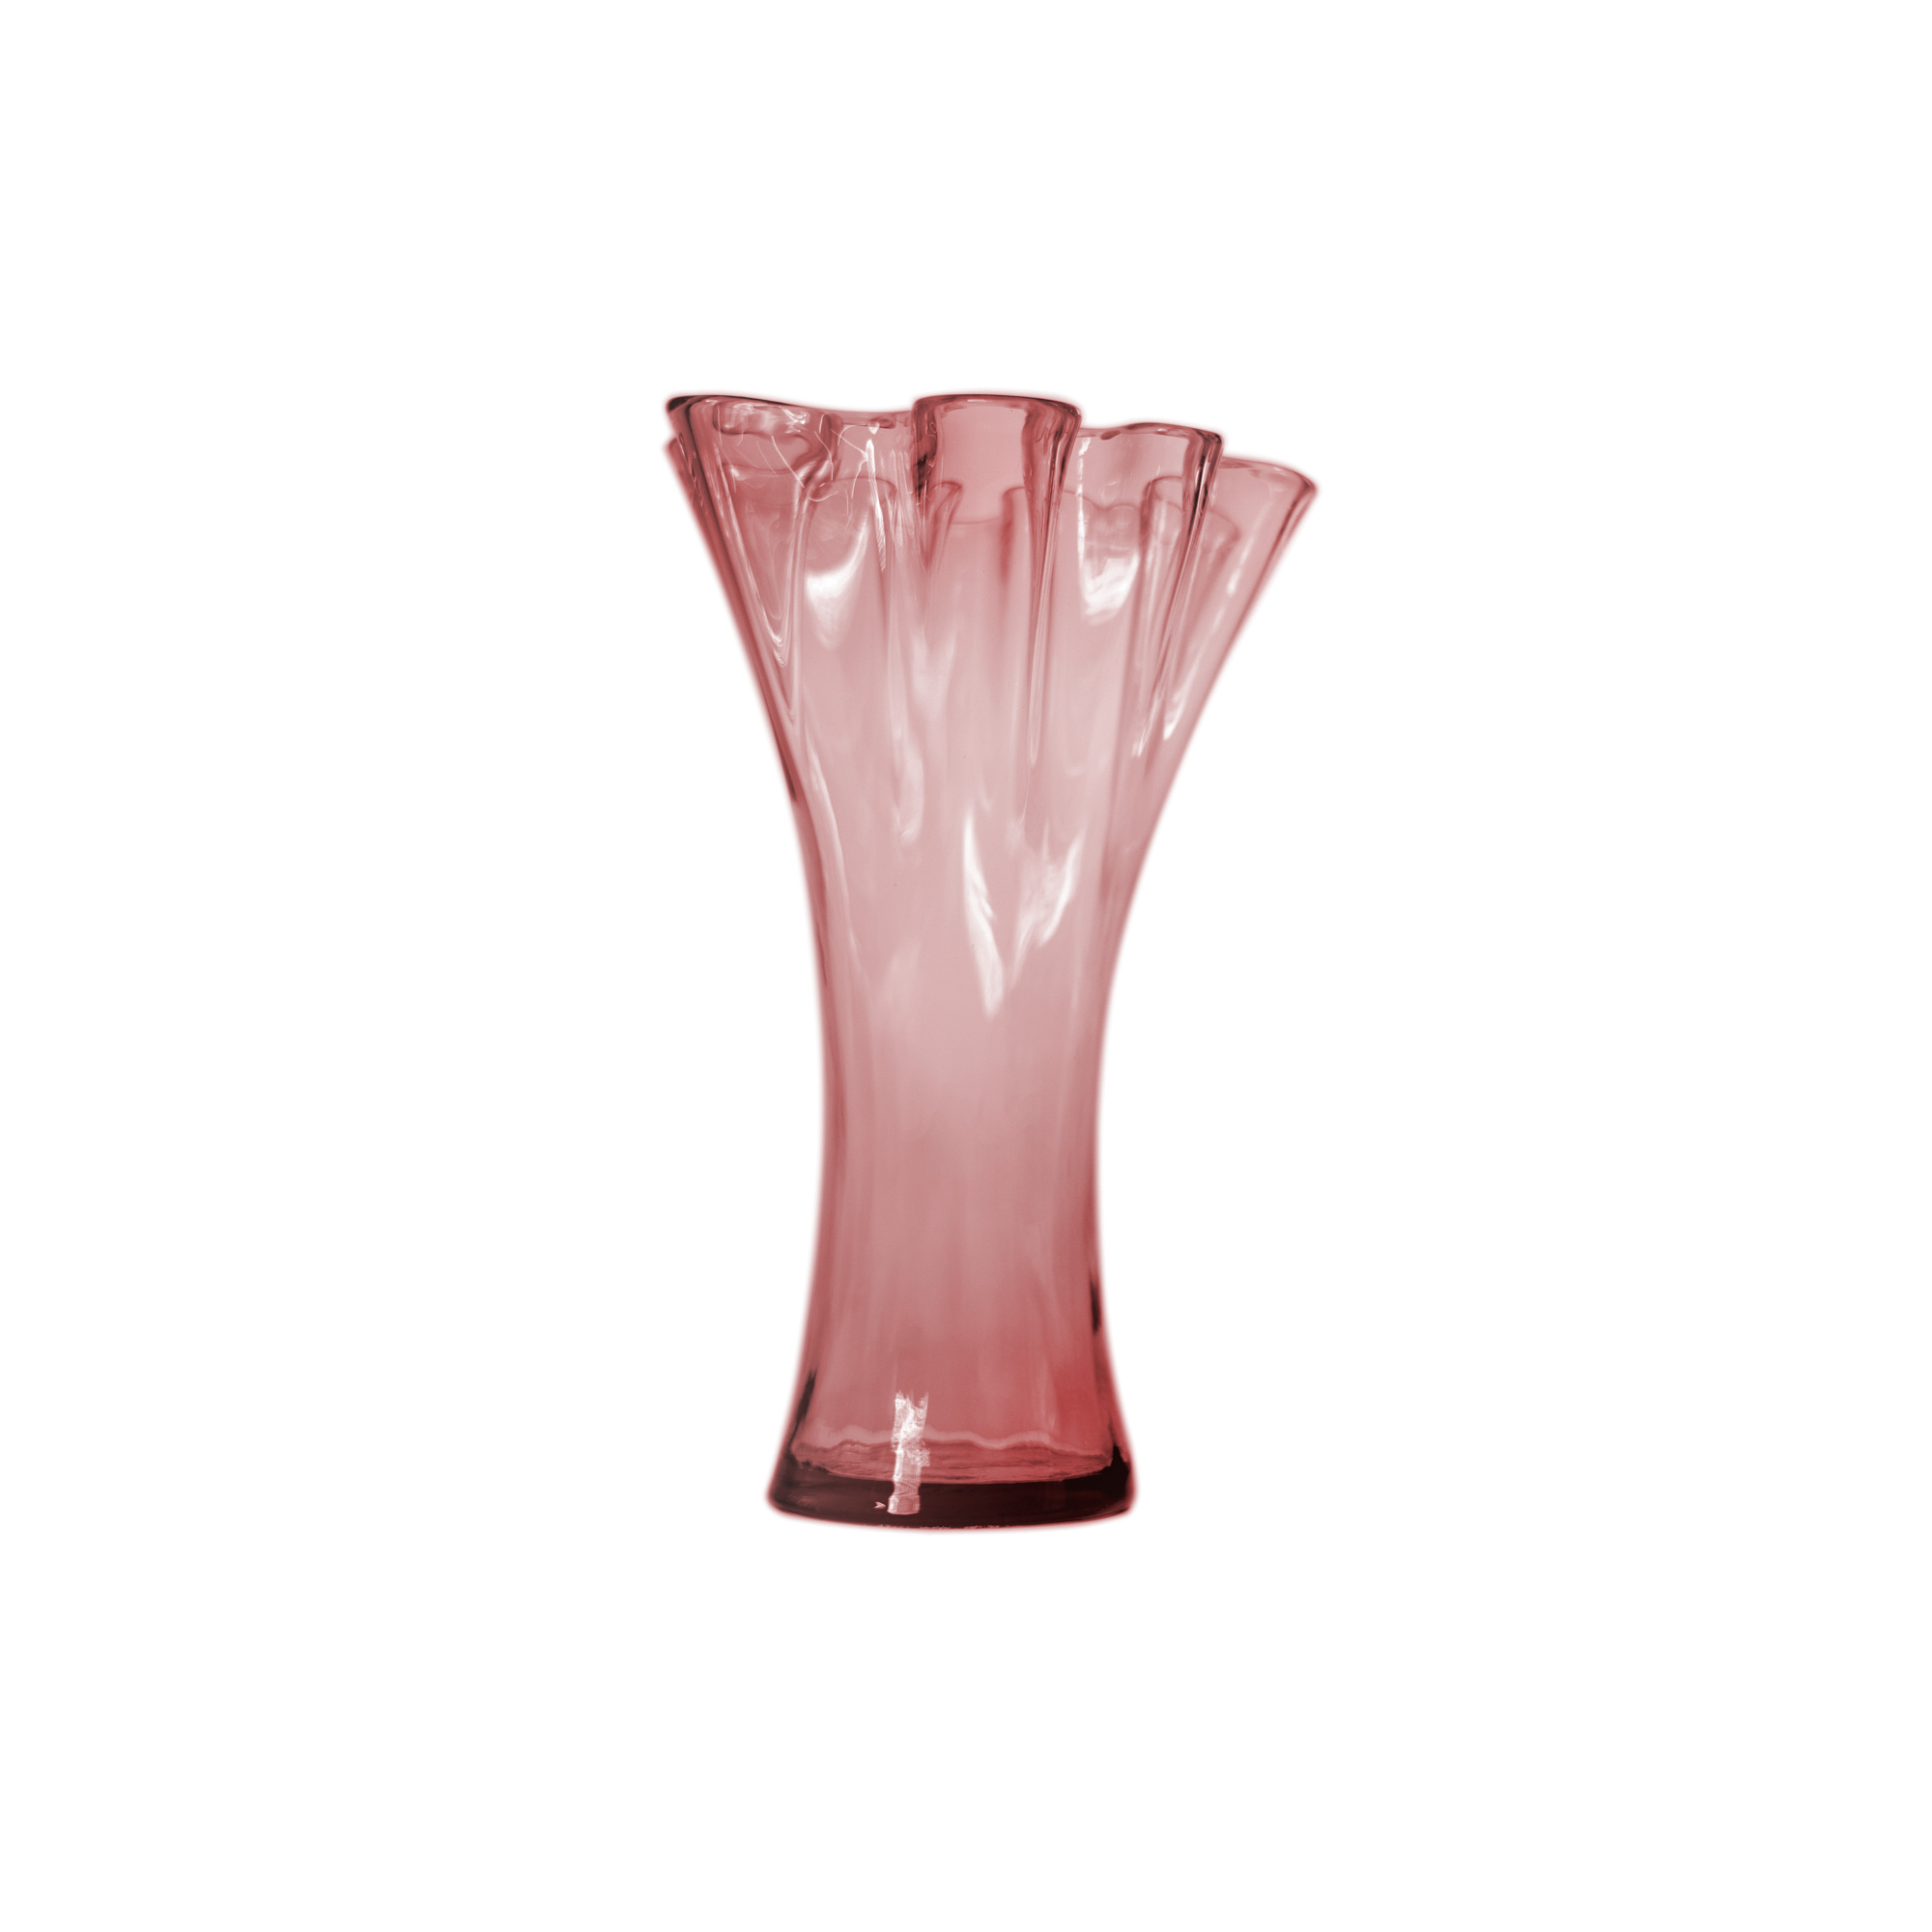 Ваза San miguel Artesania розовый 30 см ваза san miguel artesania 30см цвет розовый